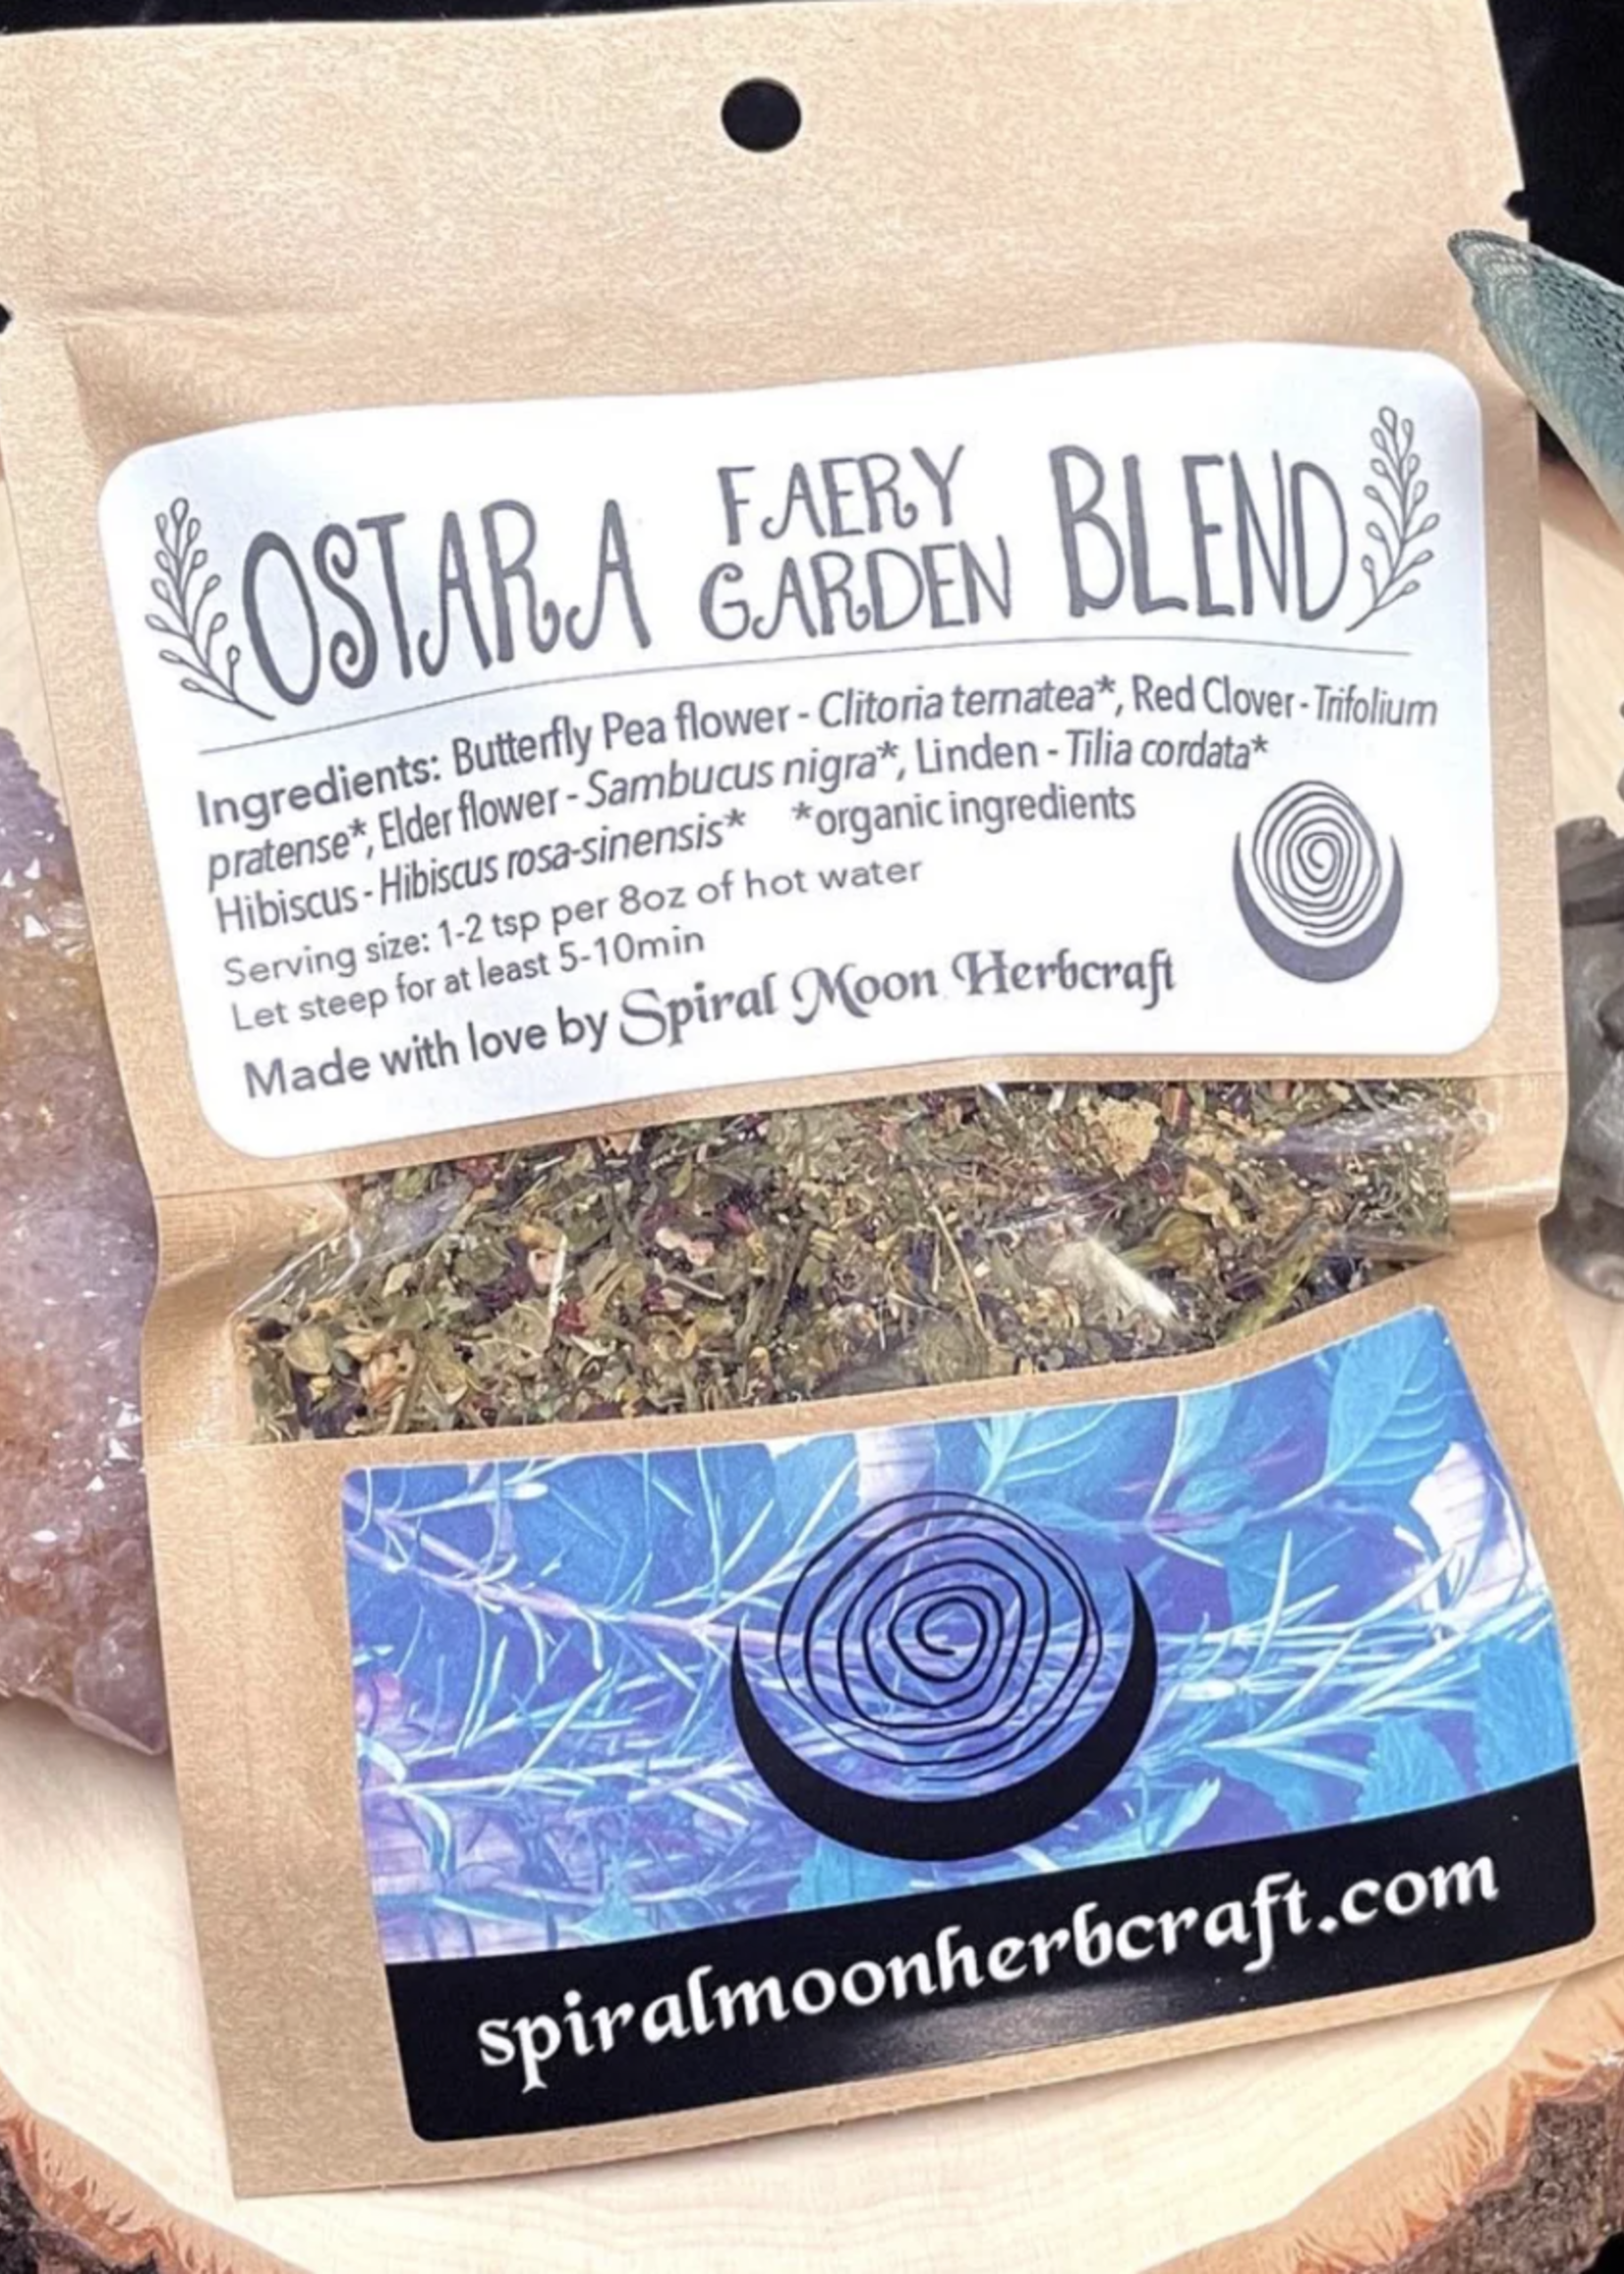 Spiral Moon Herbcraft Ostara Faery Garden Blend Tea